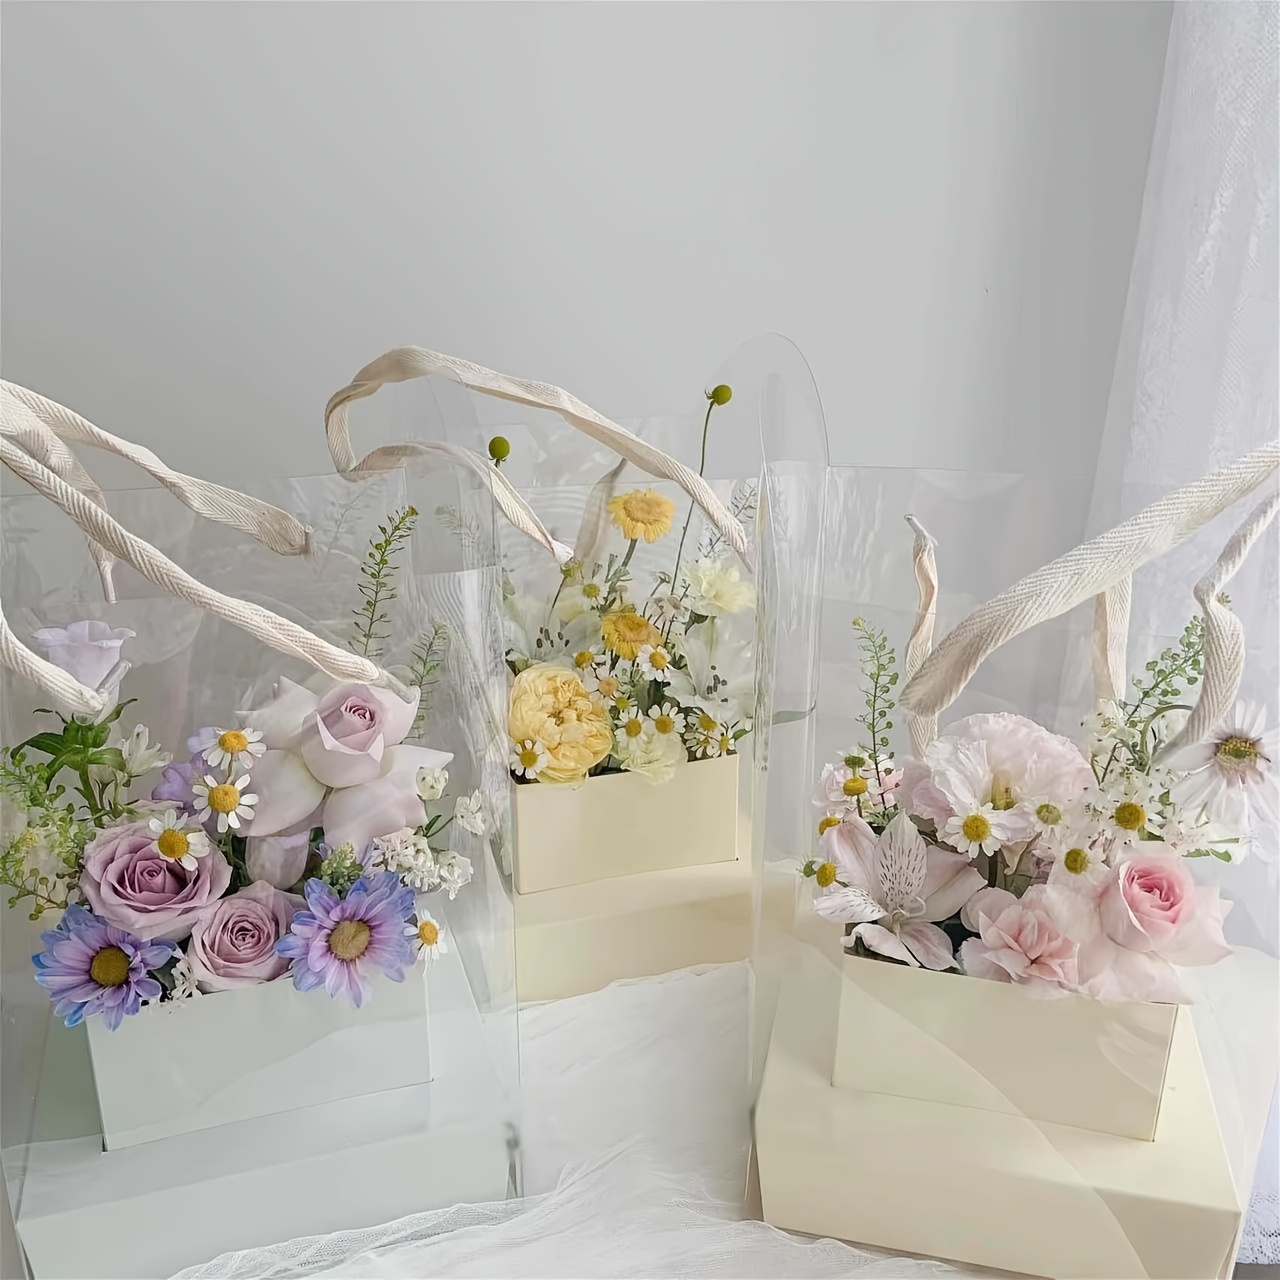  chengzui 2 cajas de flores en forma de corazón, cajas de regalo  florales con tapas de ventana transparentes, arreglos florales de lujo,  caja de joyería para el día de San Valentín